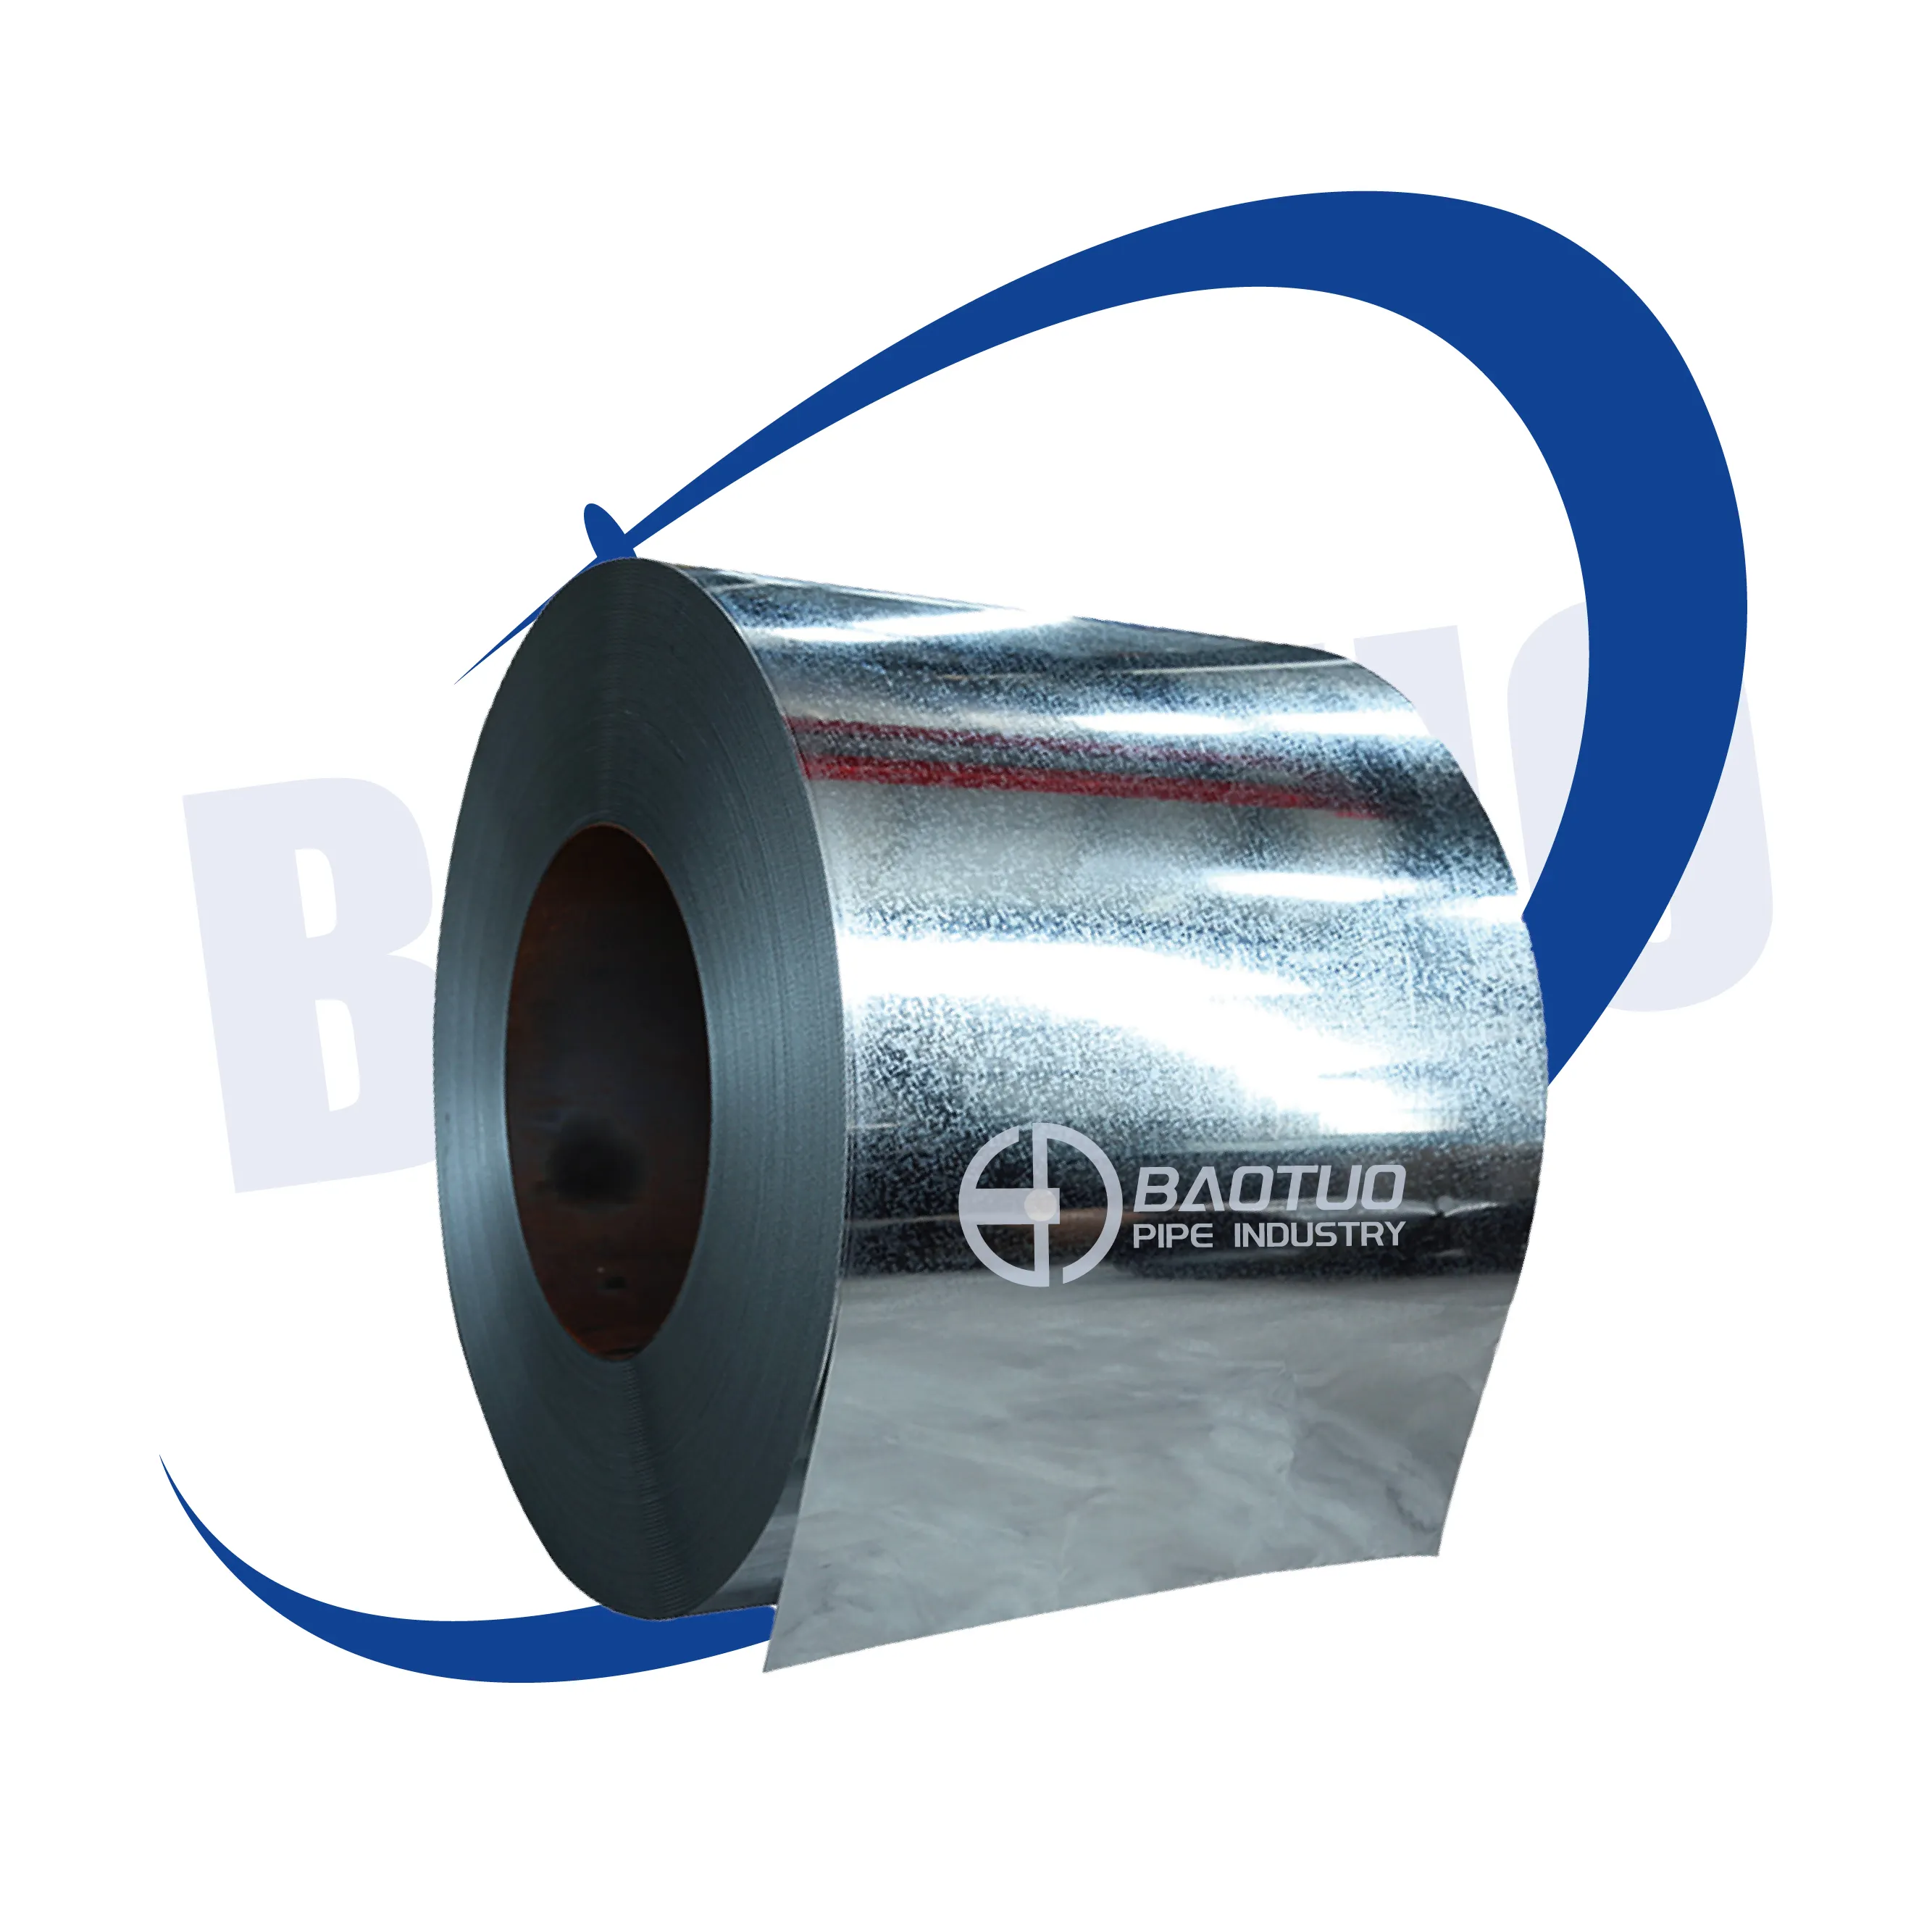 Hochwertige zinkverzinkte Stahlspule: Überlegene Korrosionsbeständigkeit für Dachungen, Wandpaneele